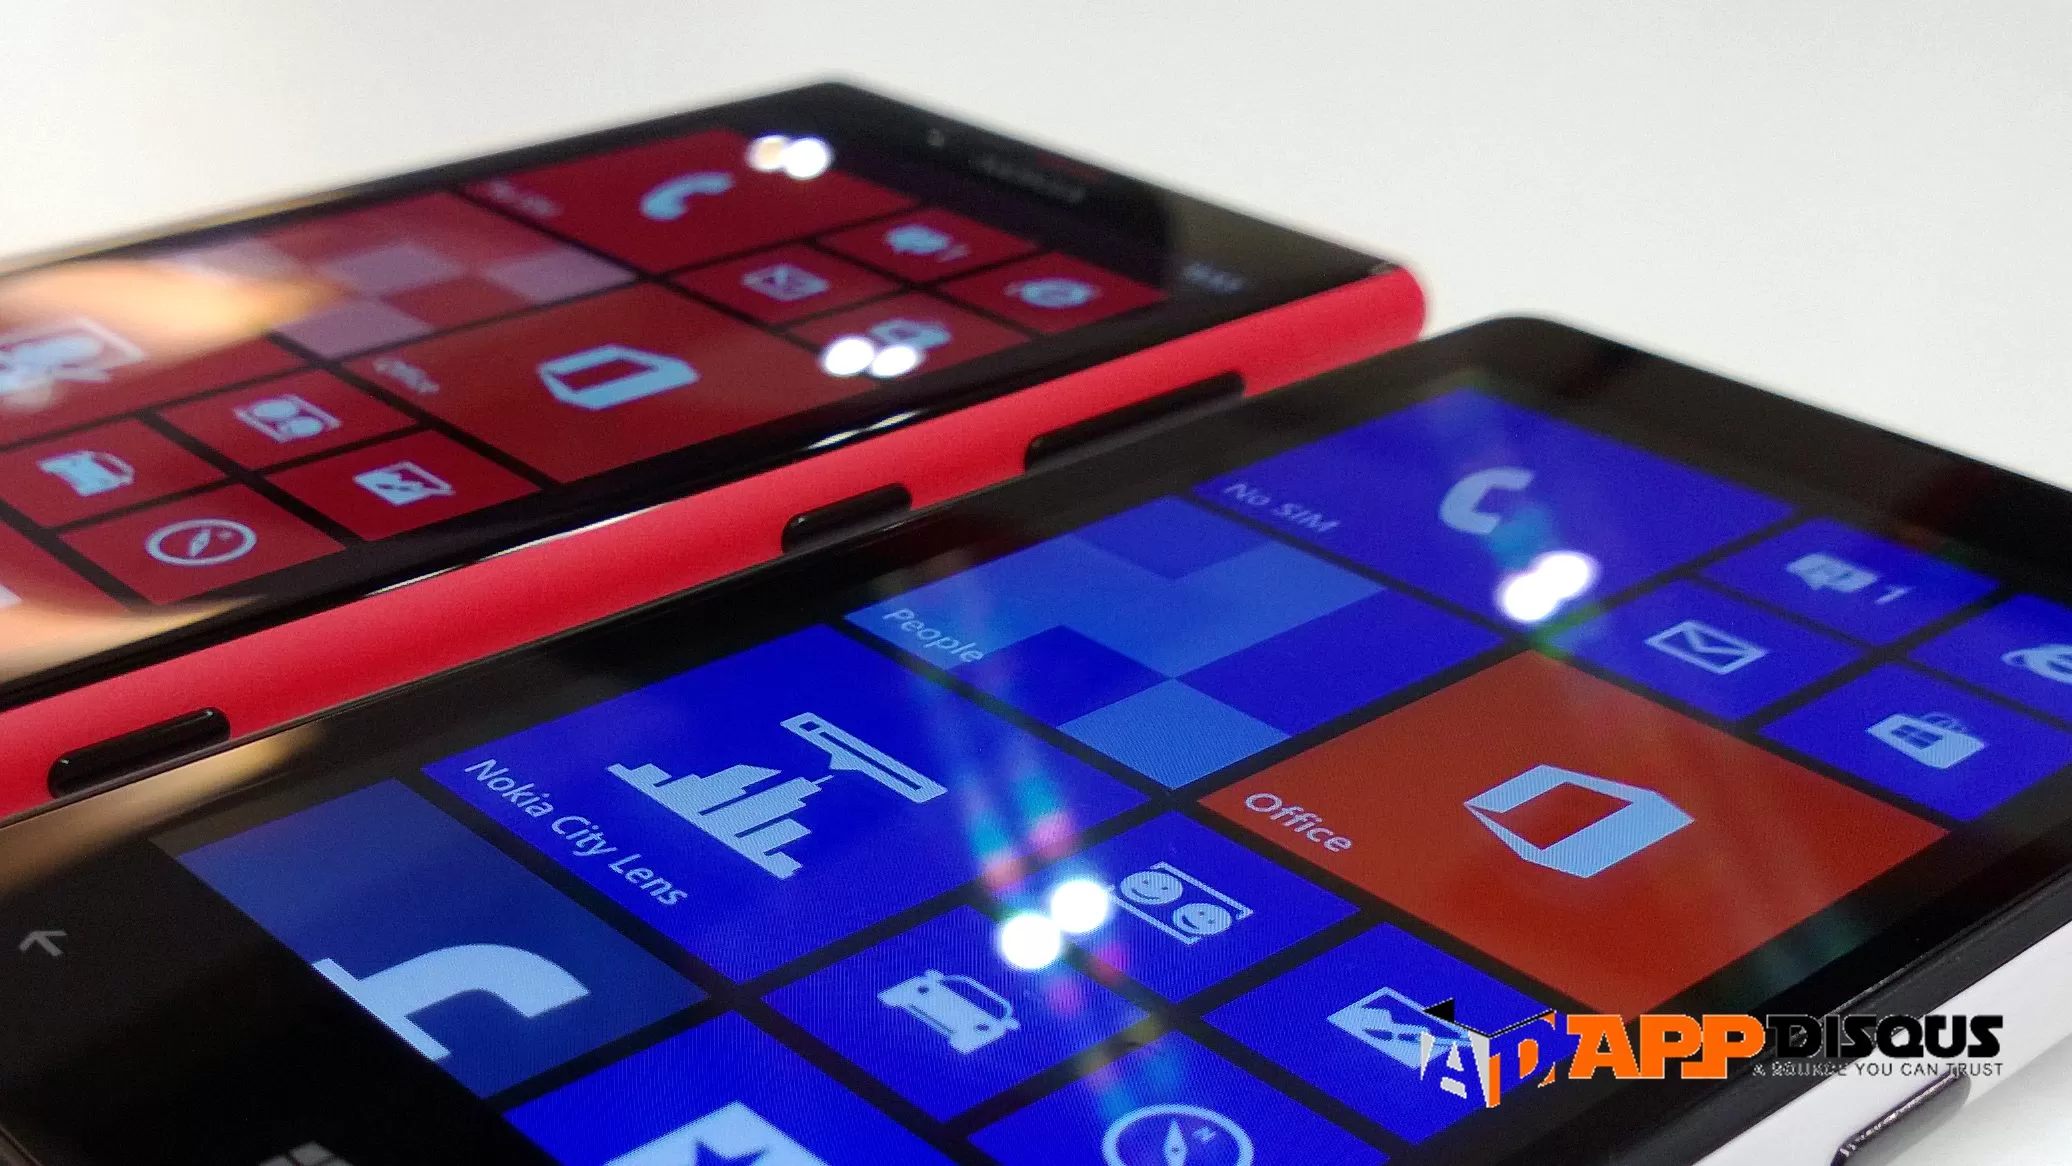 WP 20120901 064 | nokia lumia 820 | <!--:TH--></noscript>Appdisqus Showcase : เปรียบเทียบ Nokia Lumia 720 & Nokia Lumia 820 ศึกสายเลือดพี่น้องข้ามรุ่น ประชันการถ่ายภาพและวีดีโอ